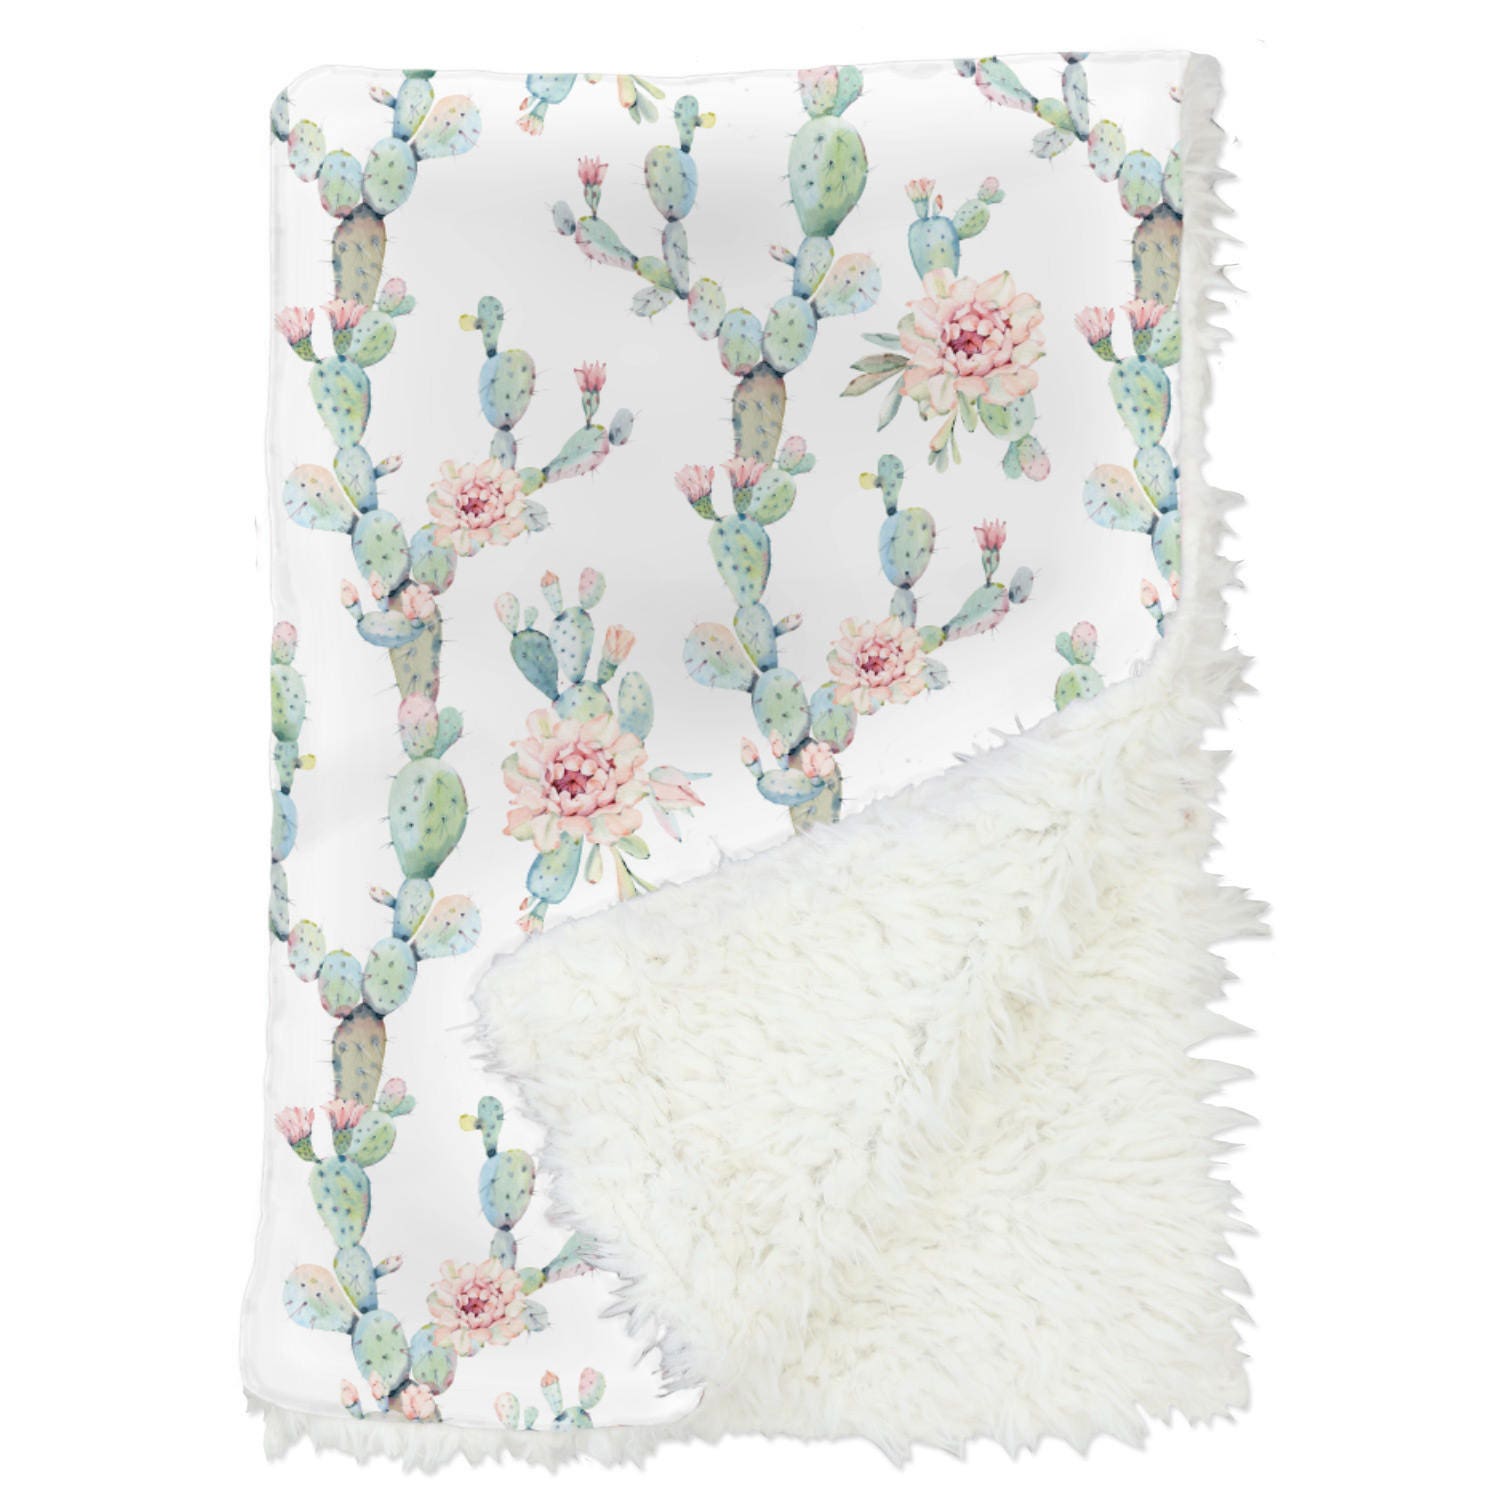 CACTUS Blanket Comforter REVERSIBLE Gift Girl TEEN SUCCULENT